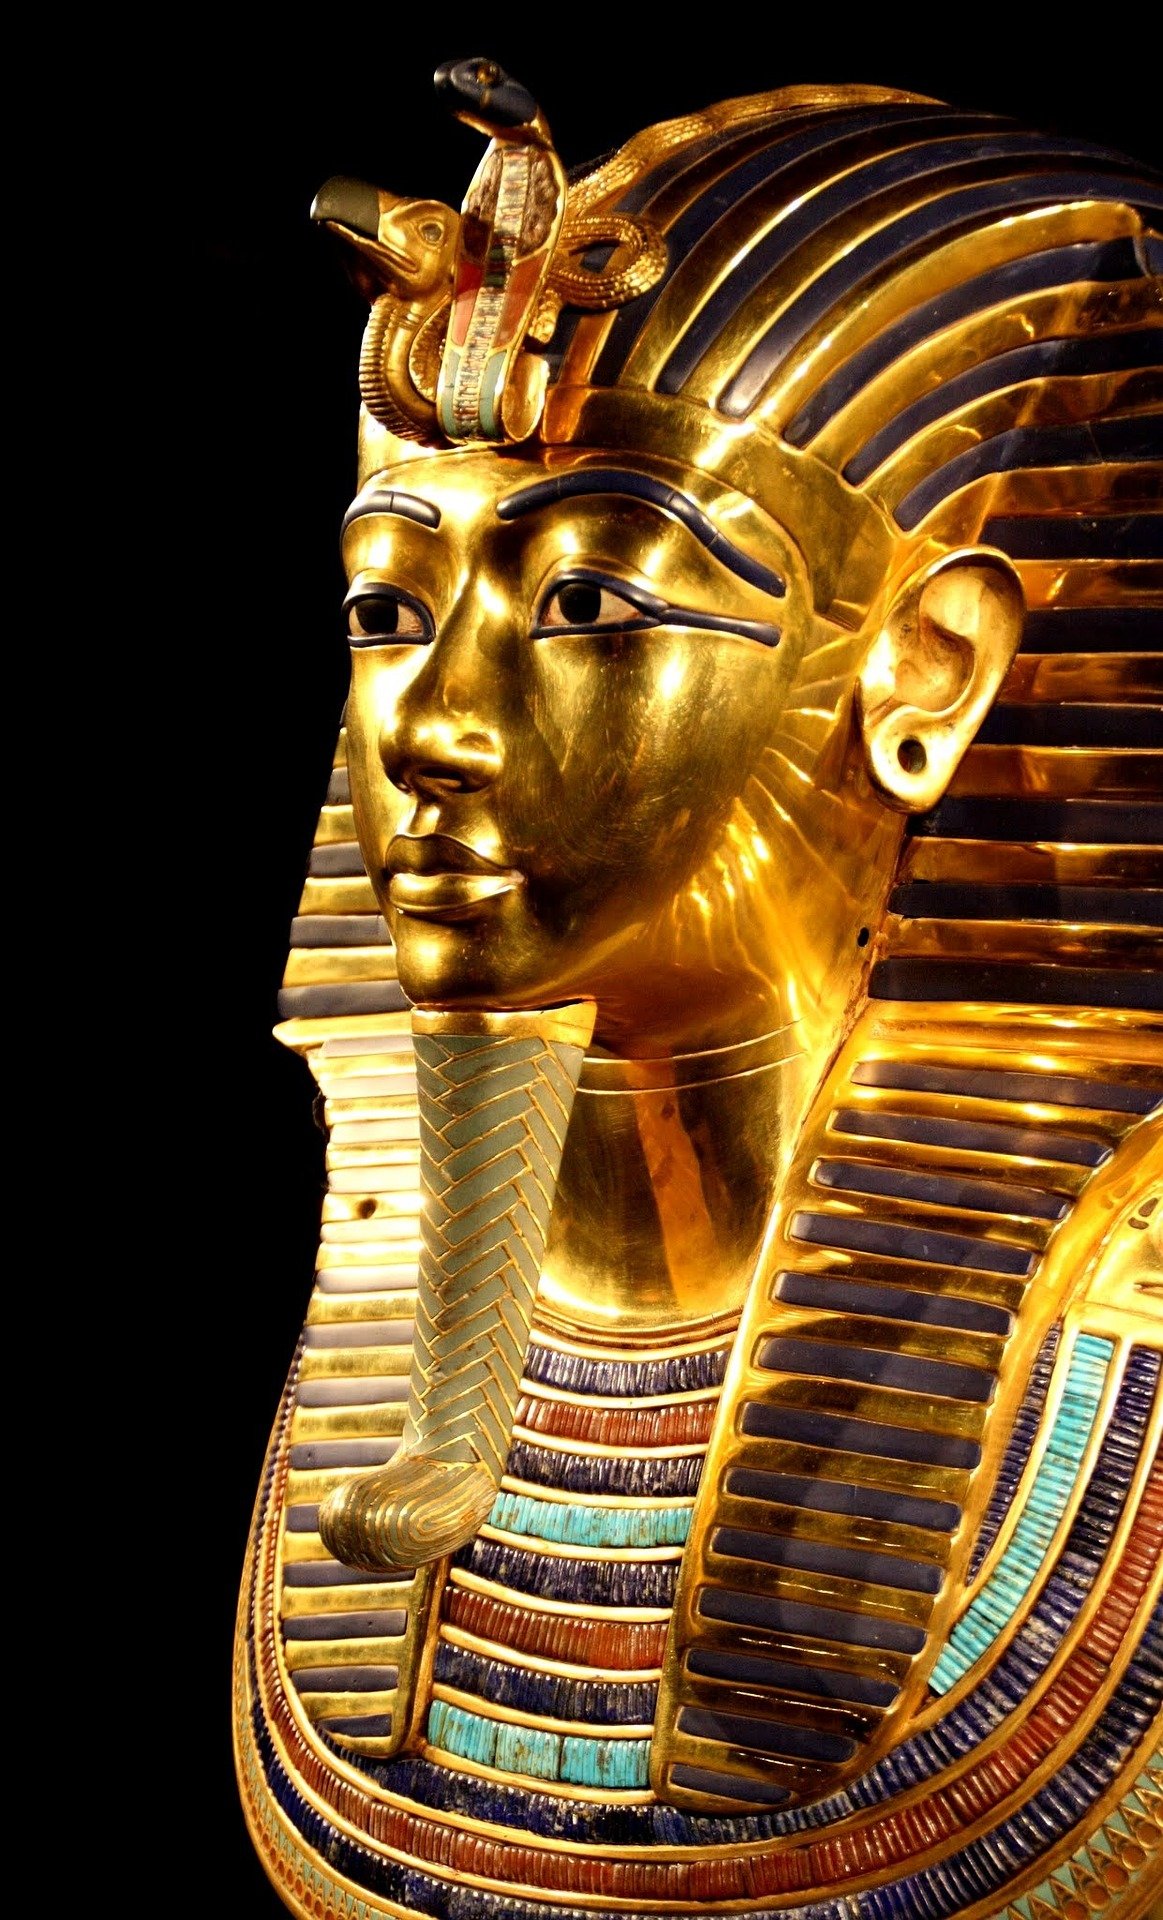 การเสียชีวิตของคณะสำรวจในอียิปต์ เกิดจาก "คำสาปฟาโรห์" หรือ "เชื้อโรคร้าย" กันแน่?